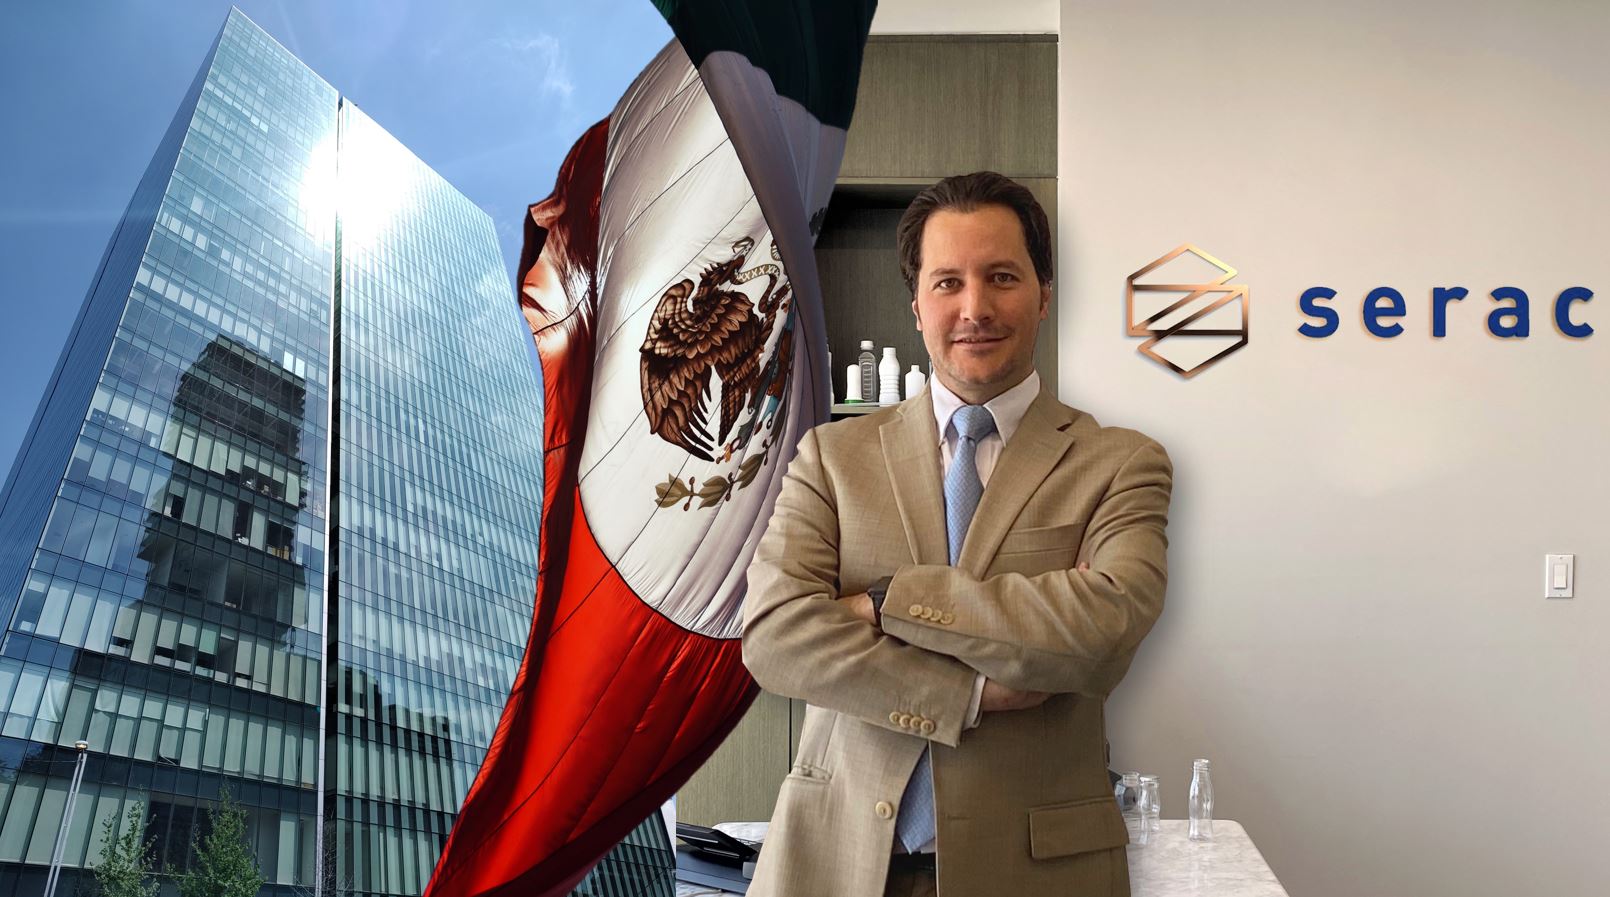 Serac斯拉克集团在墨西哥办事处成立扩大北美业务